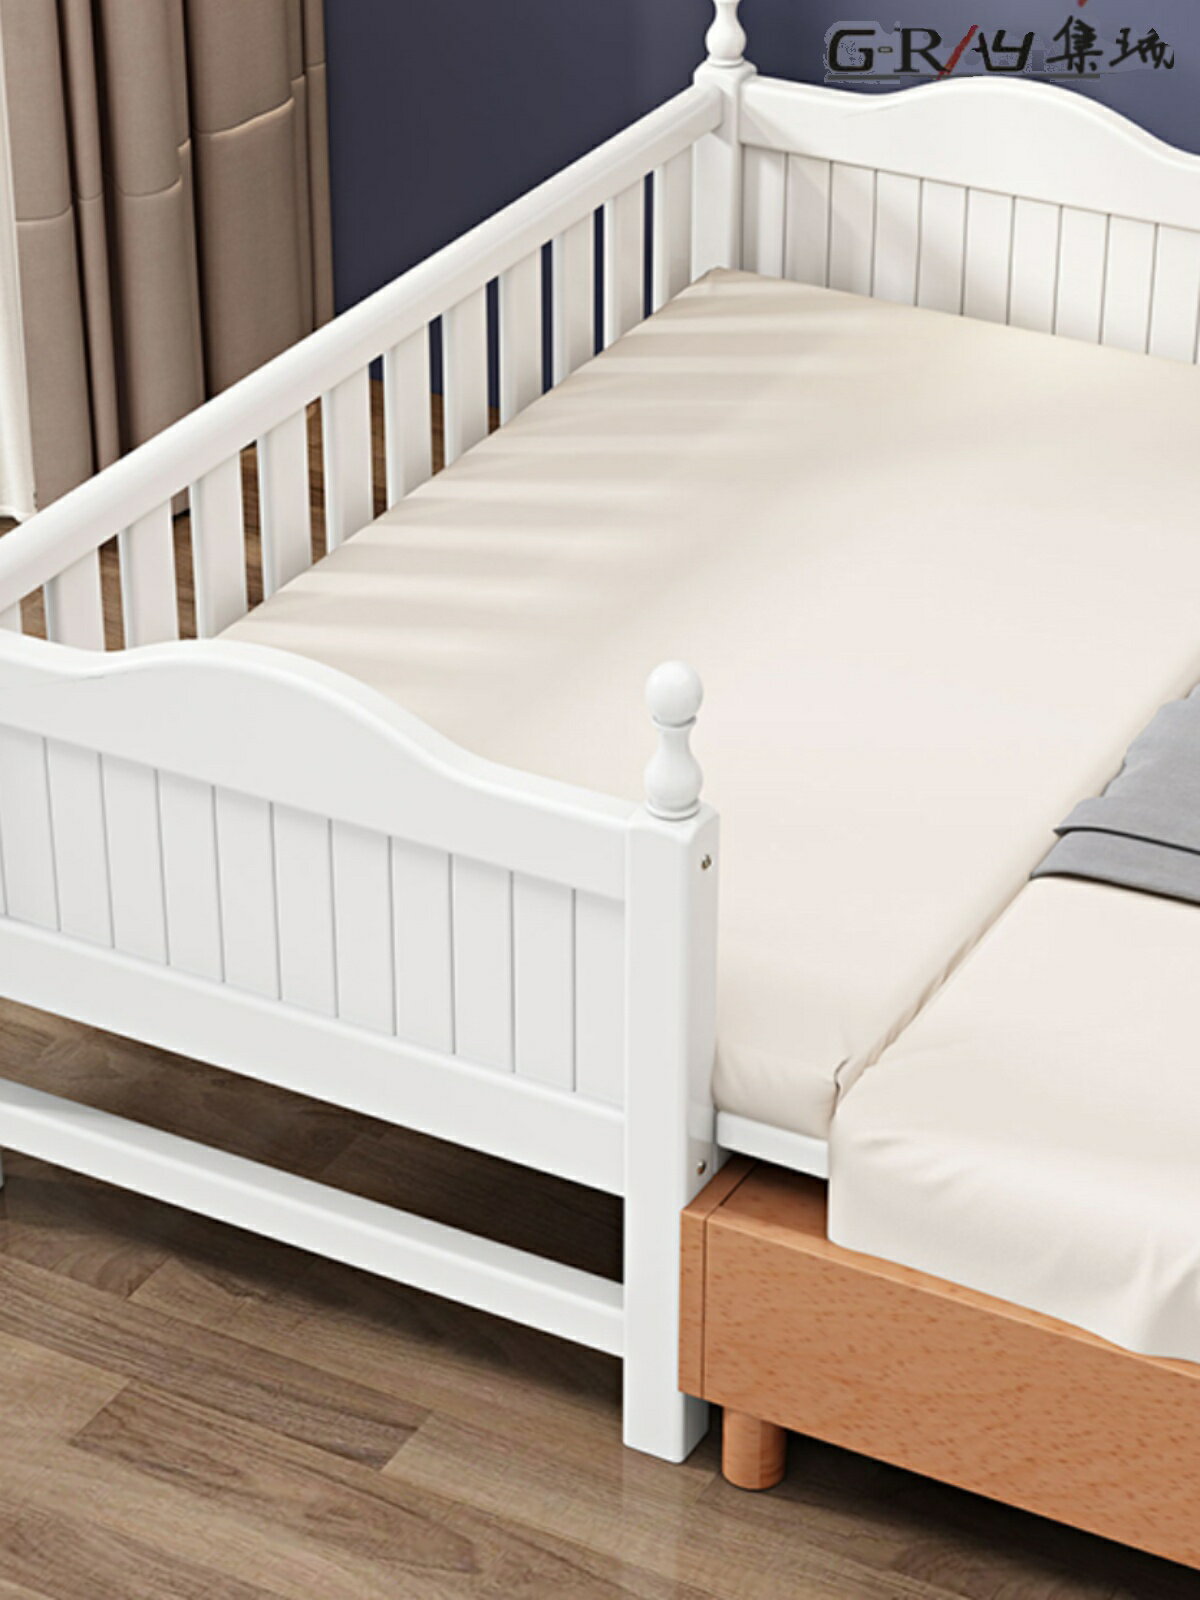 環保無漆實木兒童床男孩女孩帶護欄寶寶小床邊床加寬嬰兒拼接床